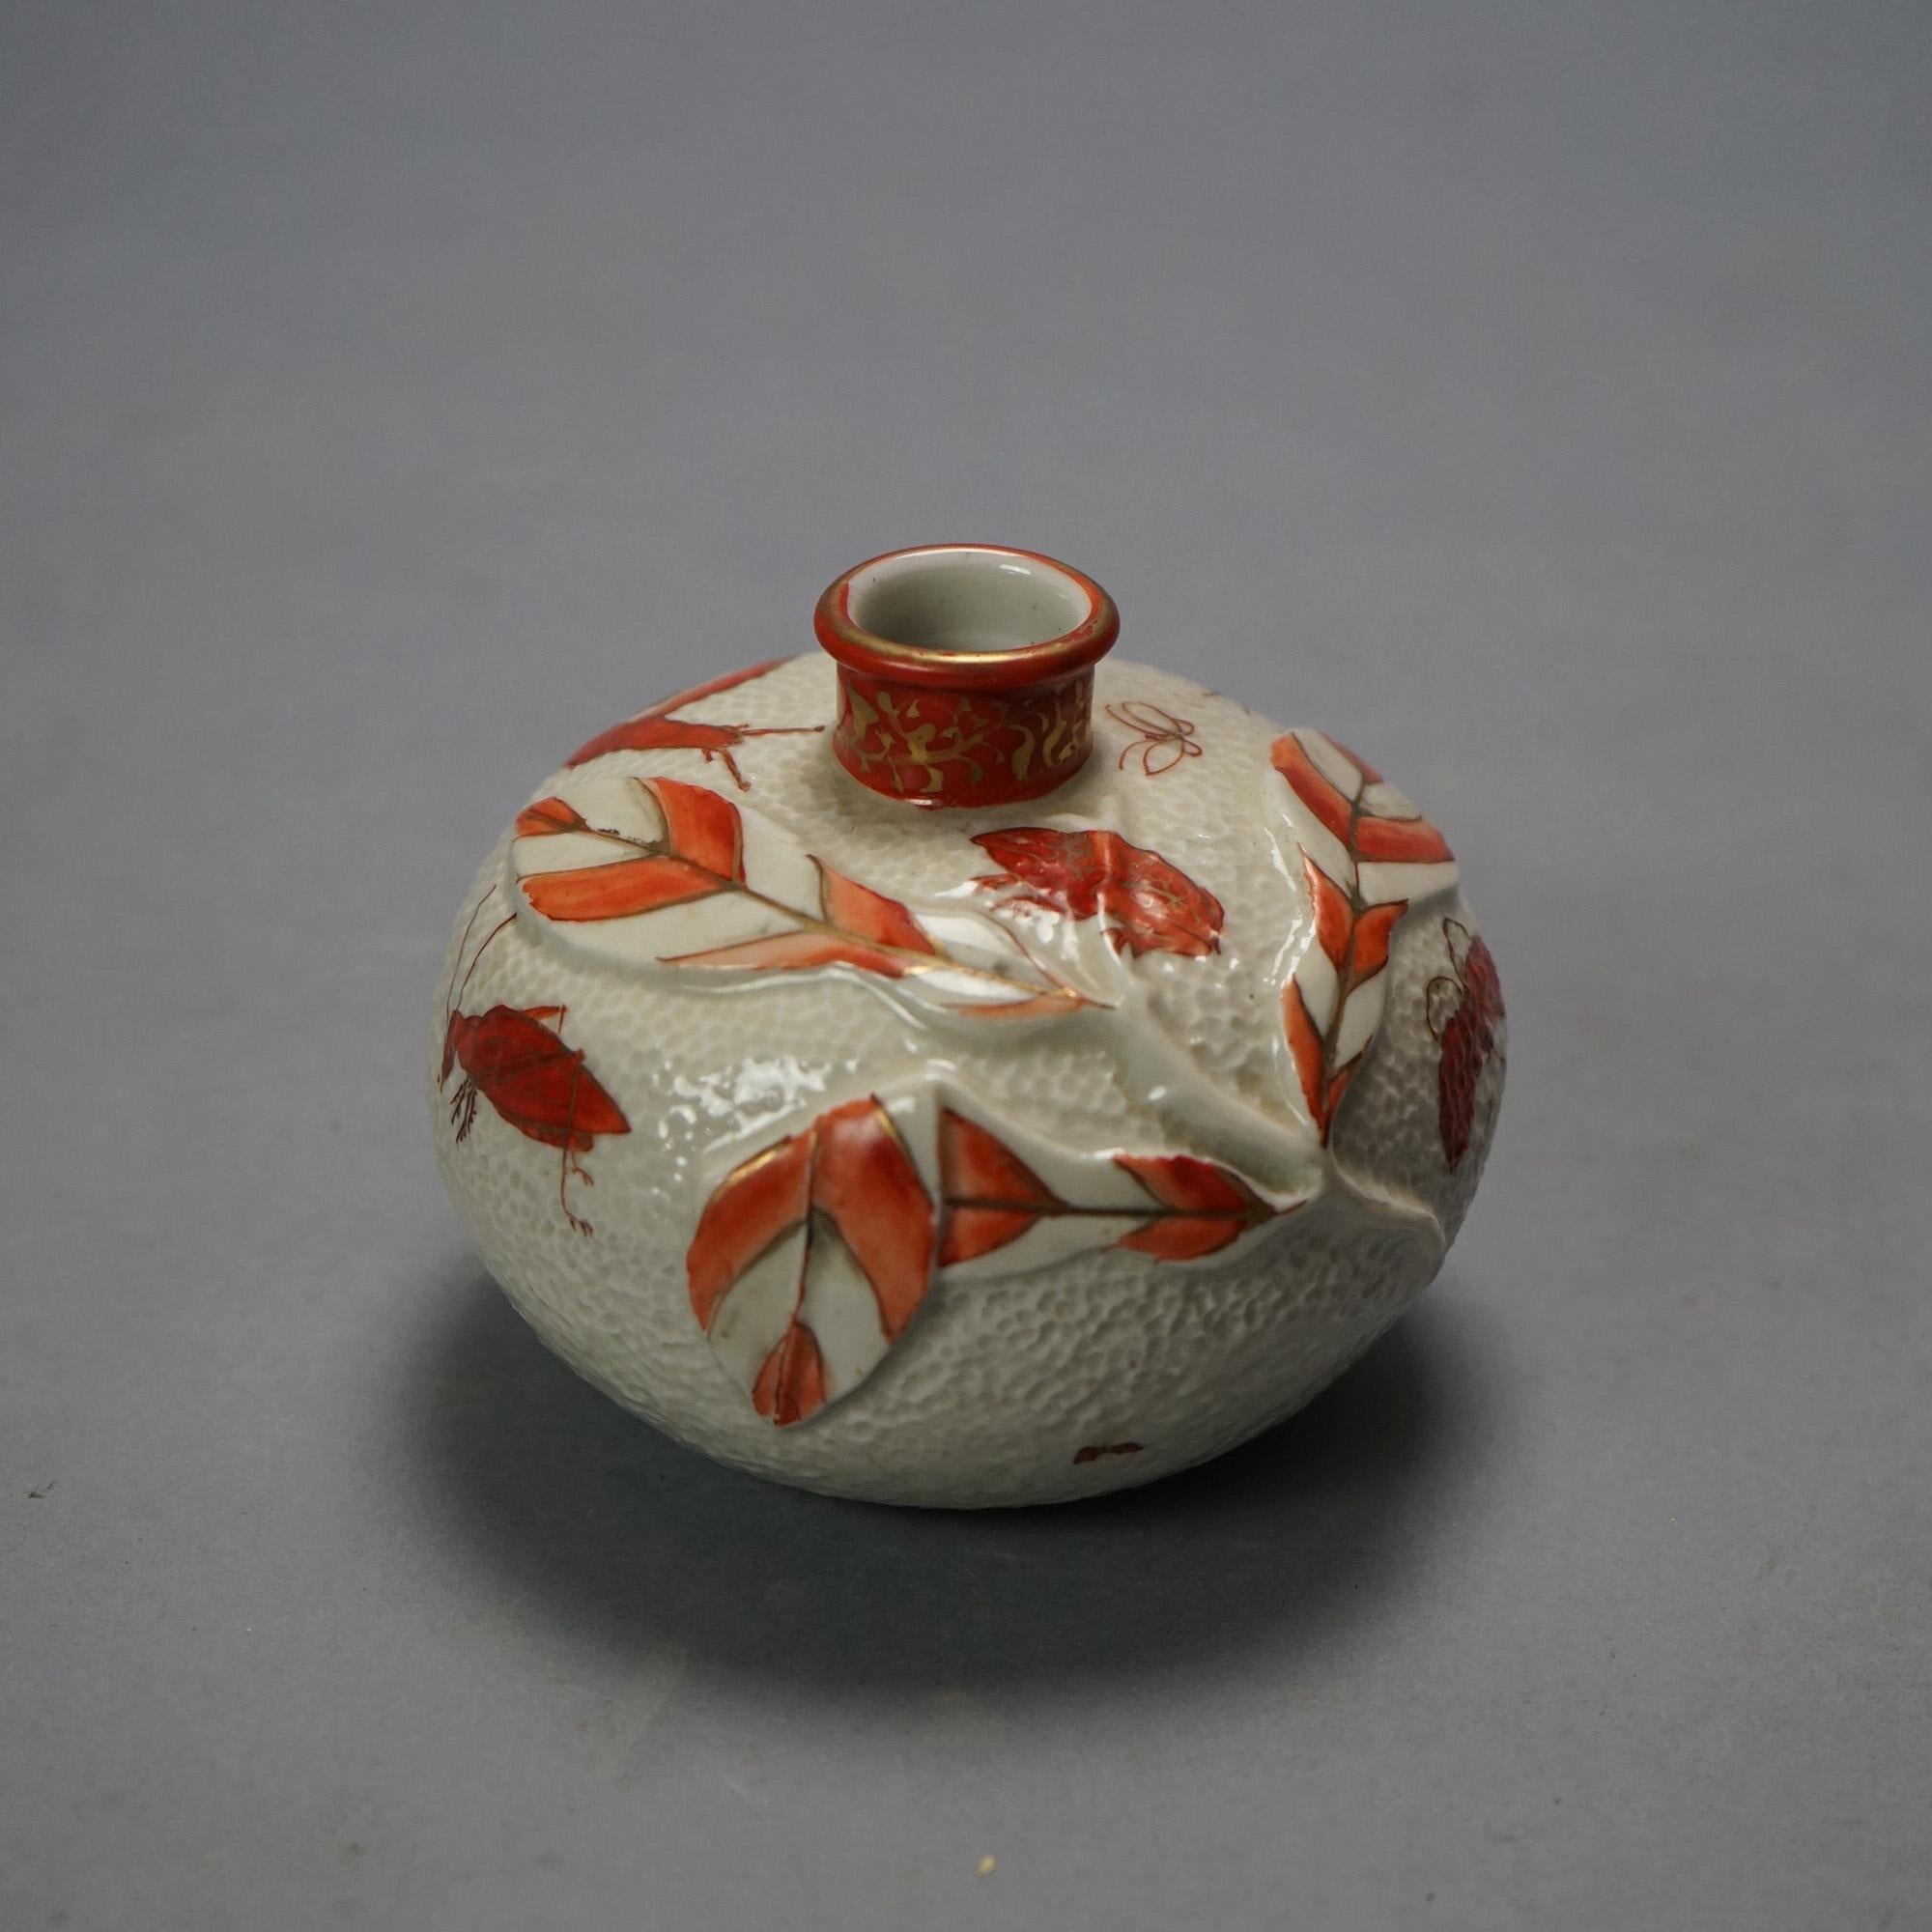 Vier antike japanische Satsuma Porzellan Vasen C1920

Maße - 3,5 